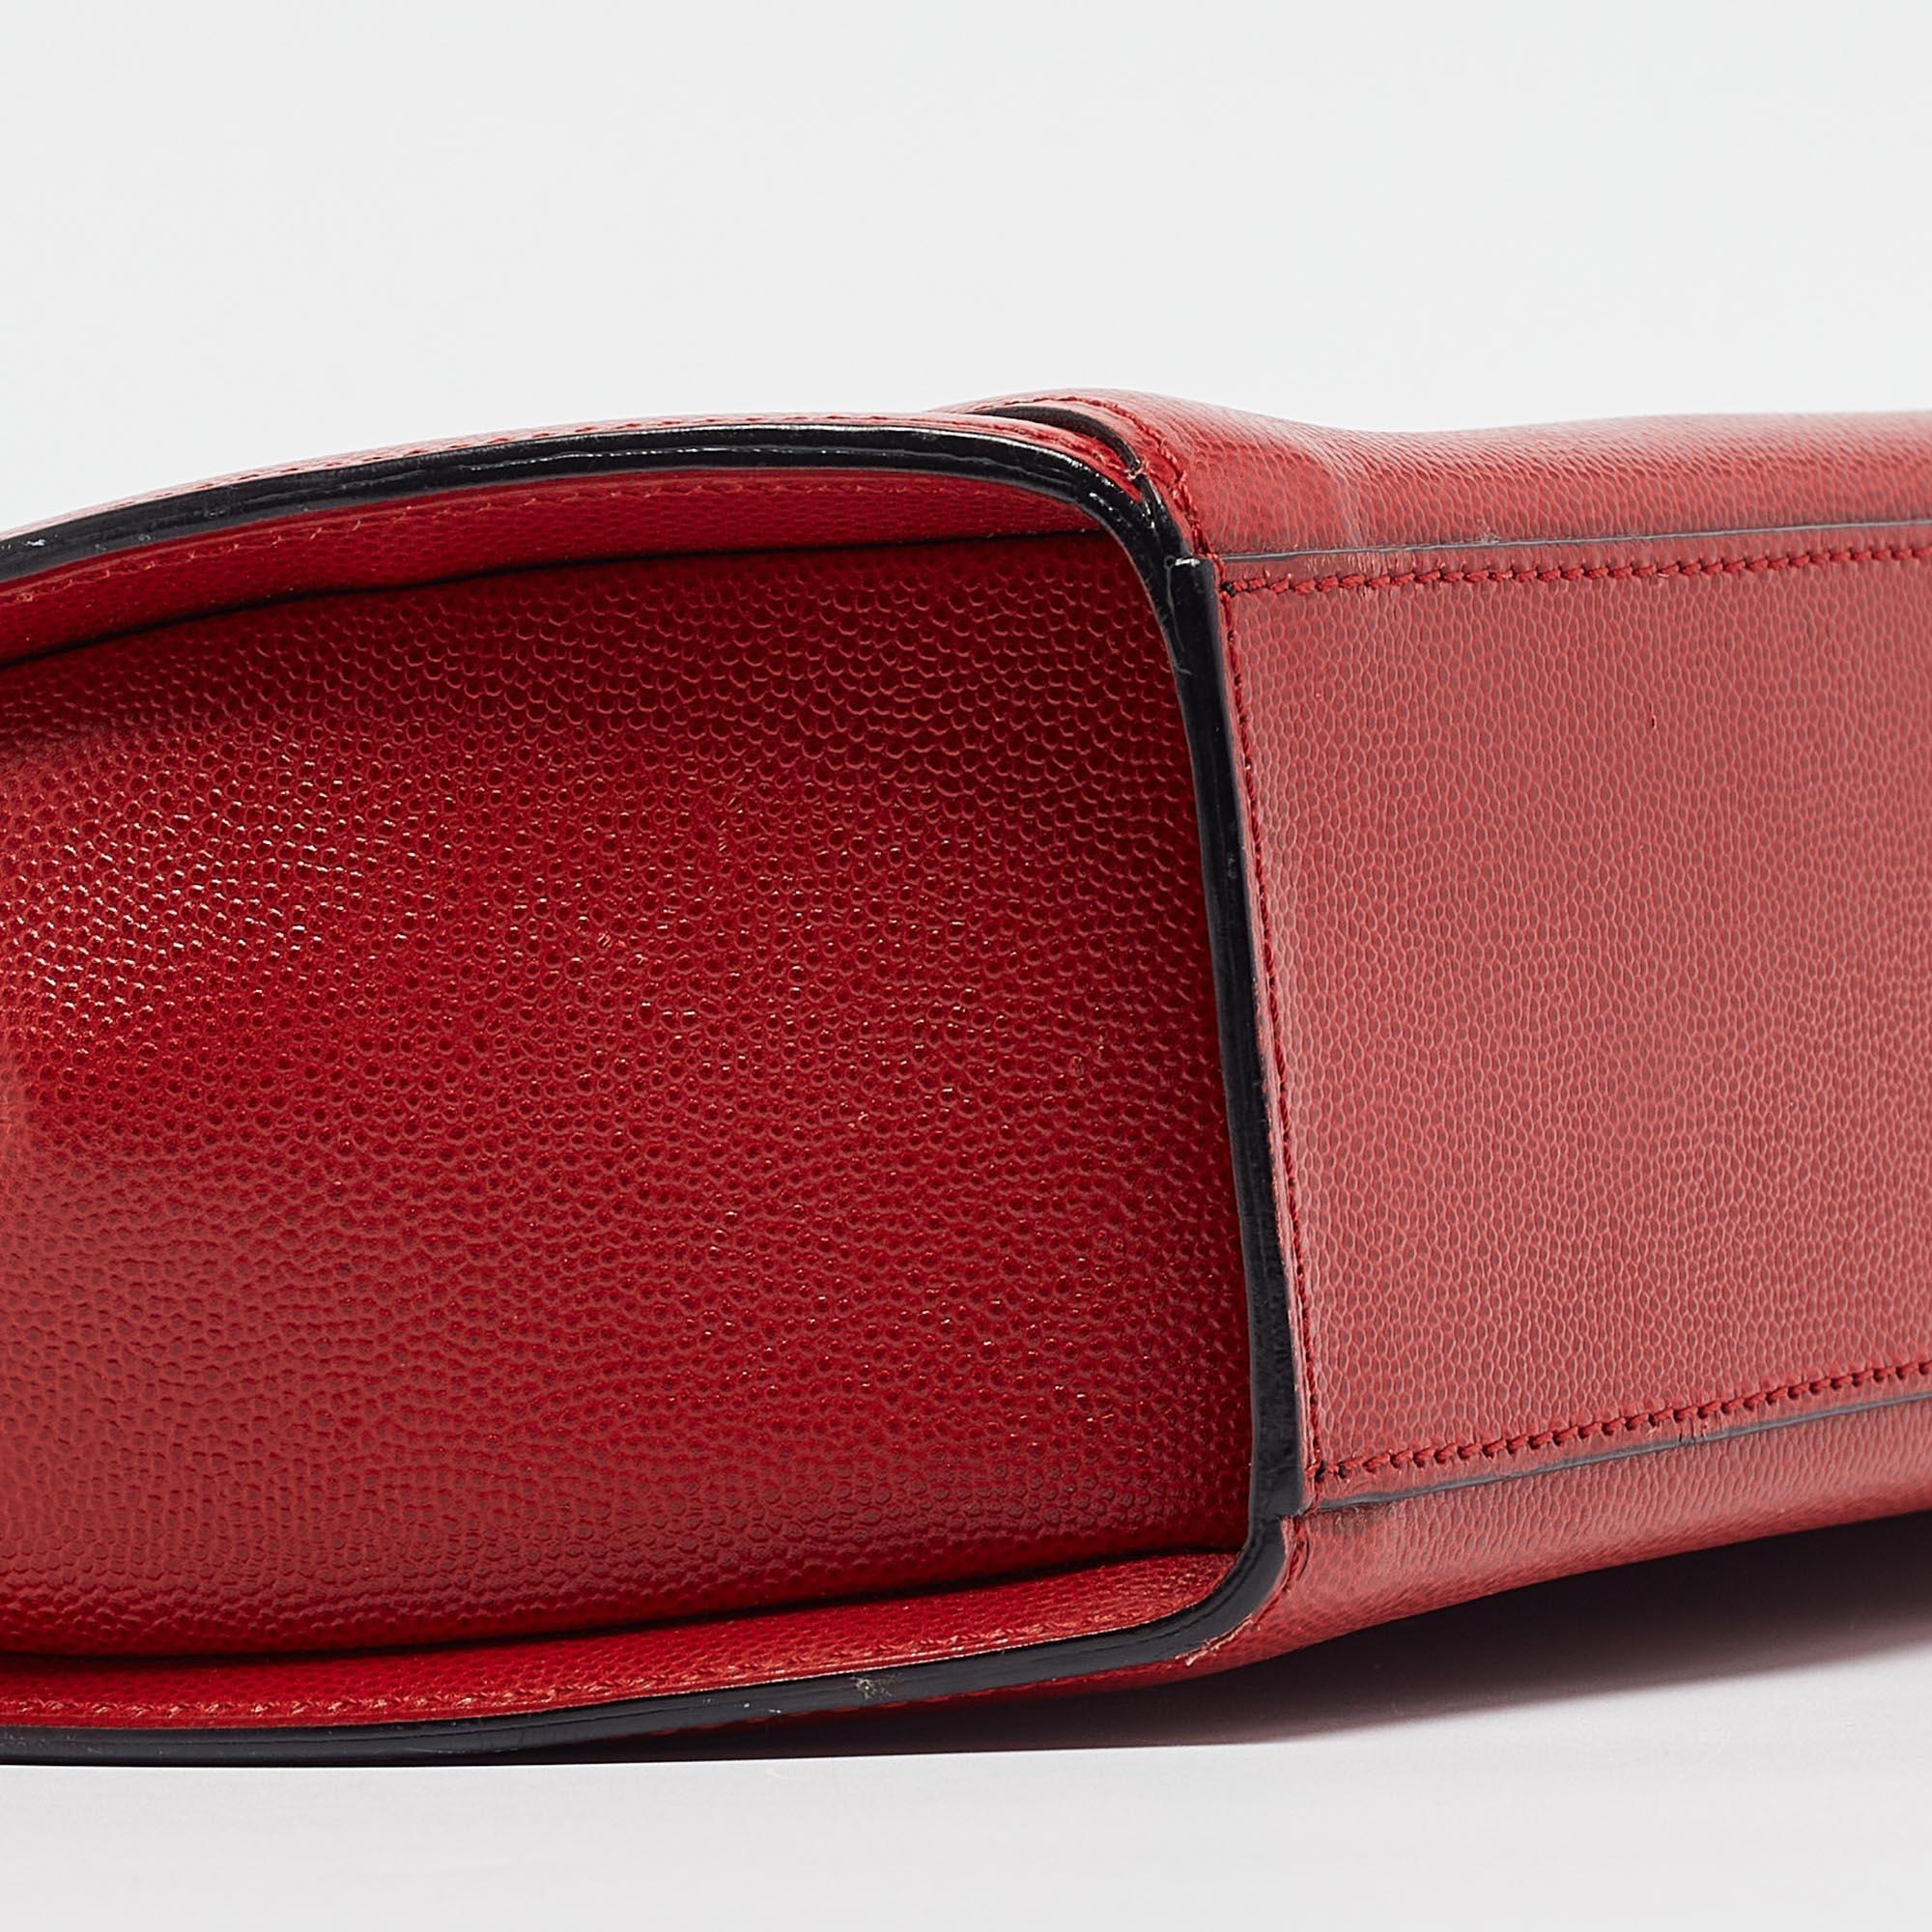 Transportez tout ce dont vous avez besoin avec style grâce à ce sac rouge de Cartier. Fabriqué à partir des meilleurs matériaux, c'est un accessoire qui promet un style et une utilisation durables.

